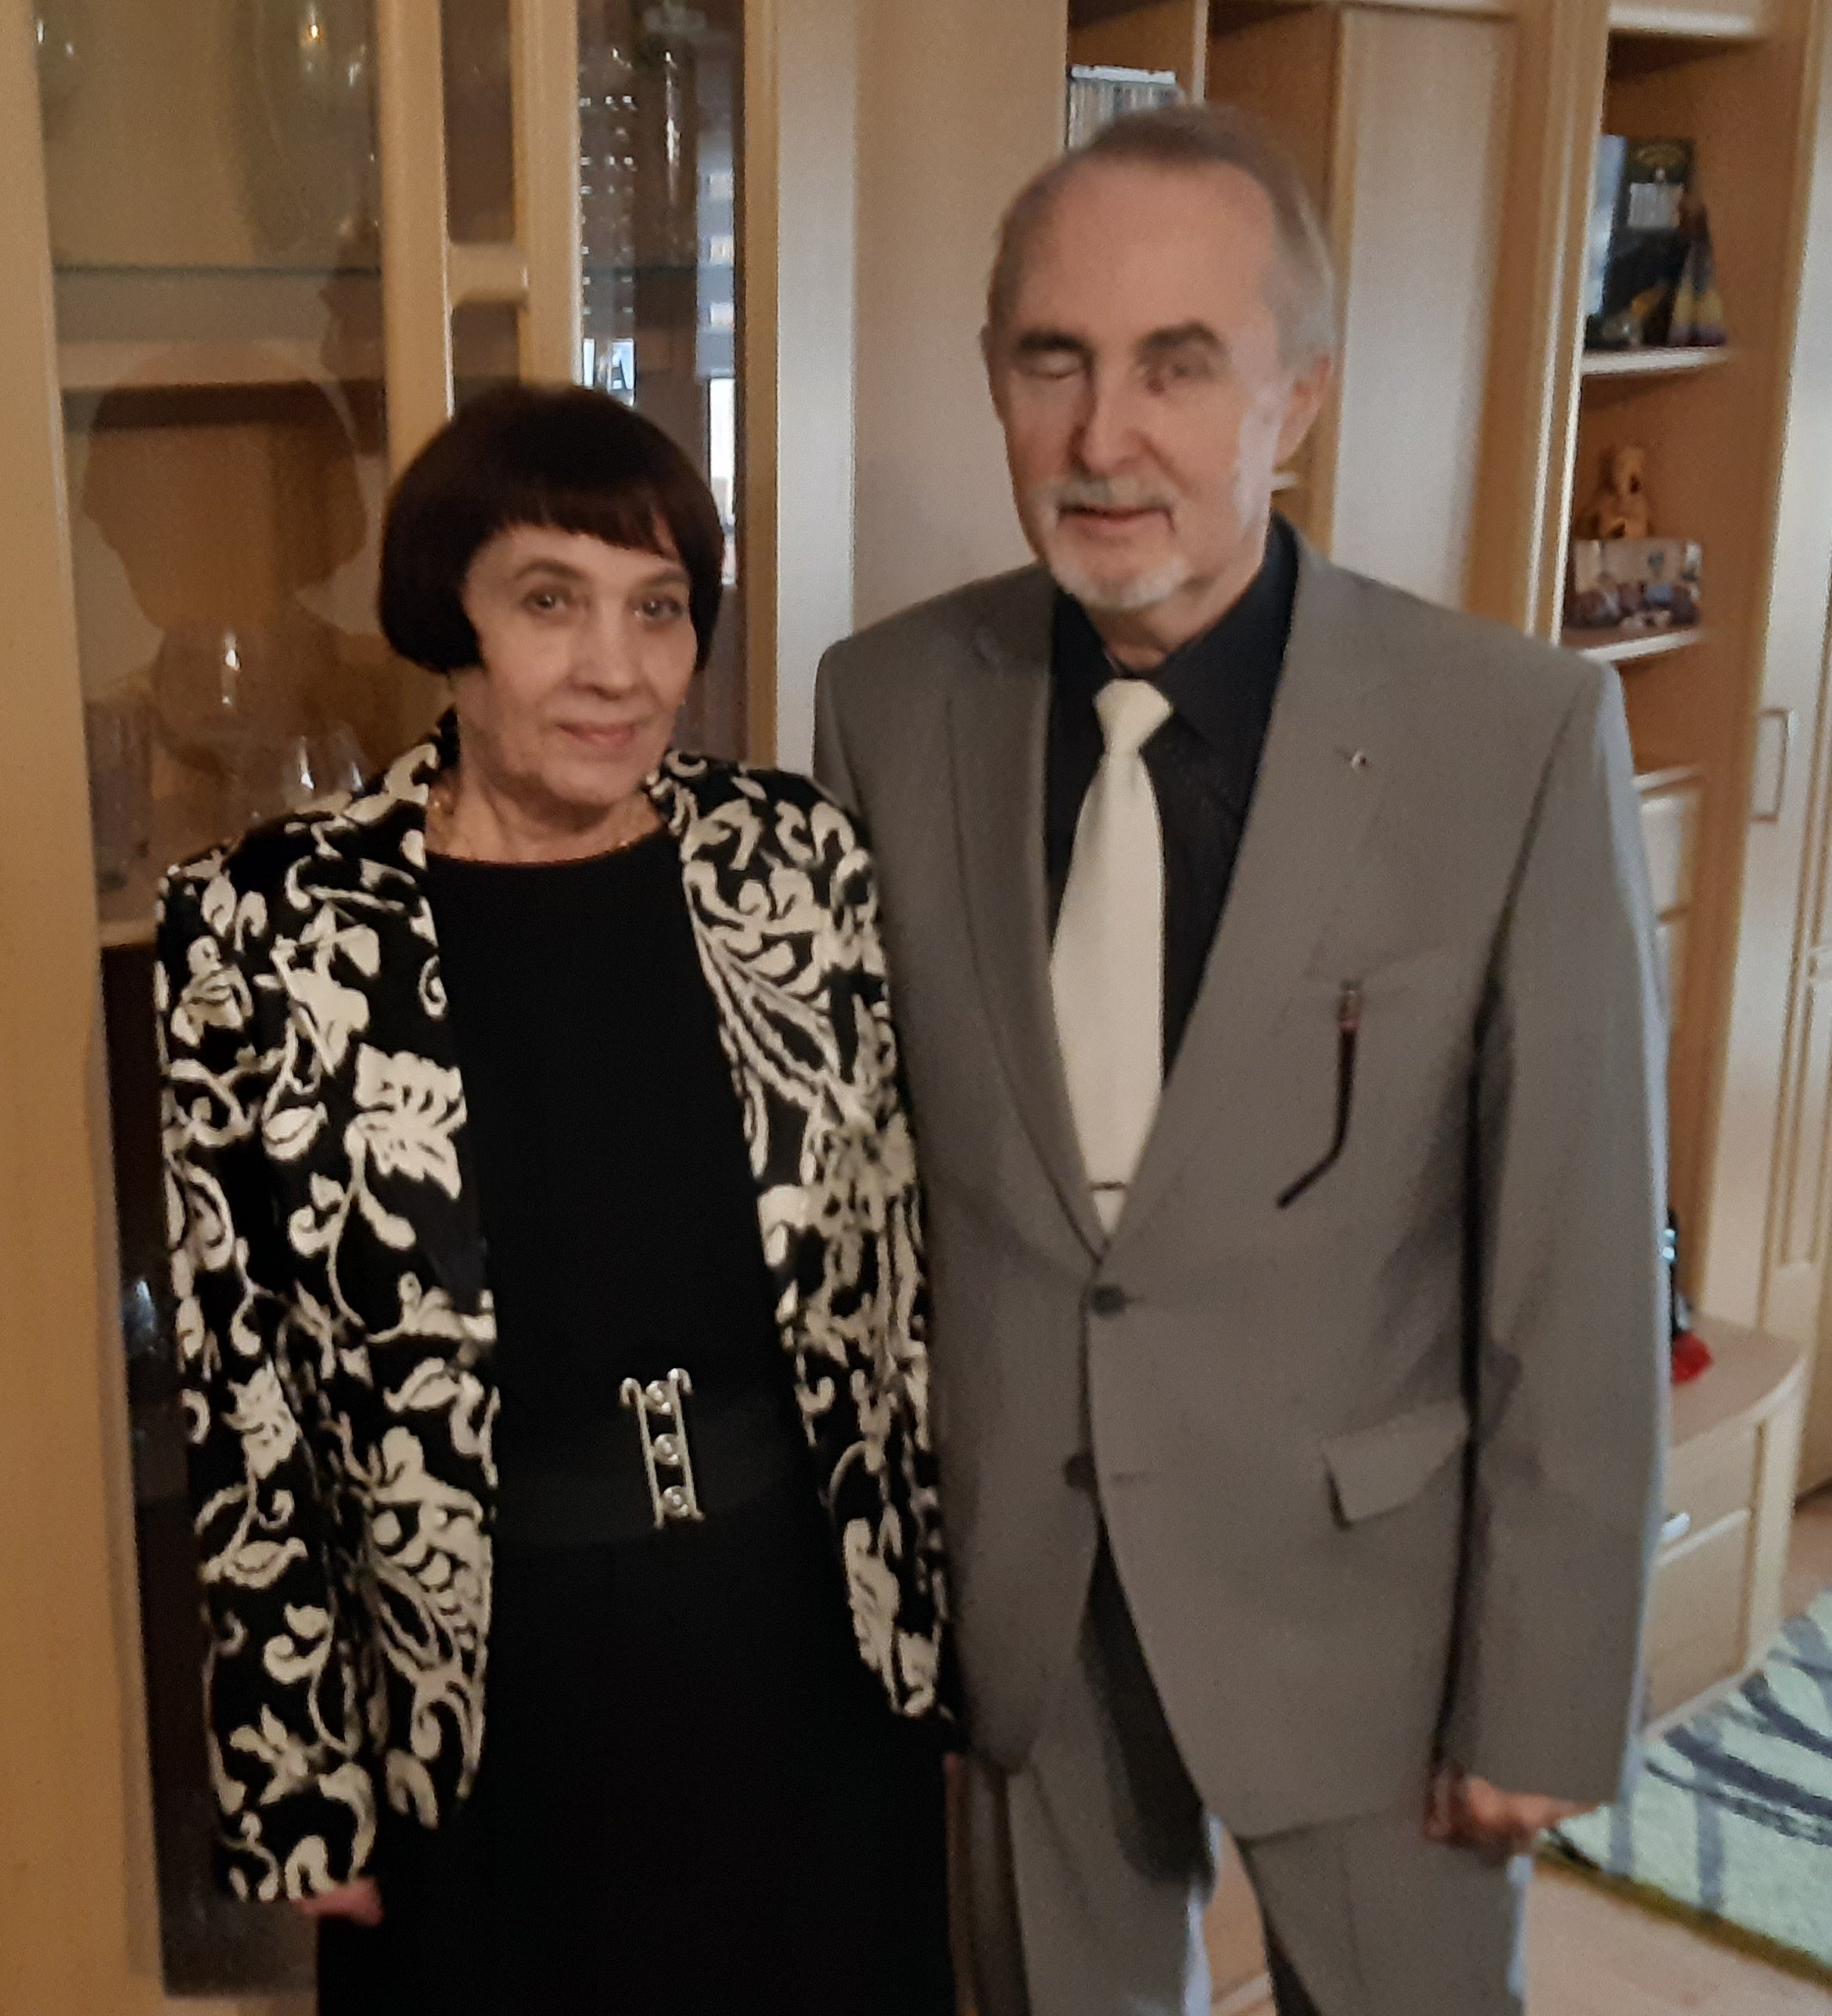  Foto: Die Jubilare Gerd Jörg Stieler und seine Frau Angelika Ingrid Stieler 